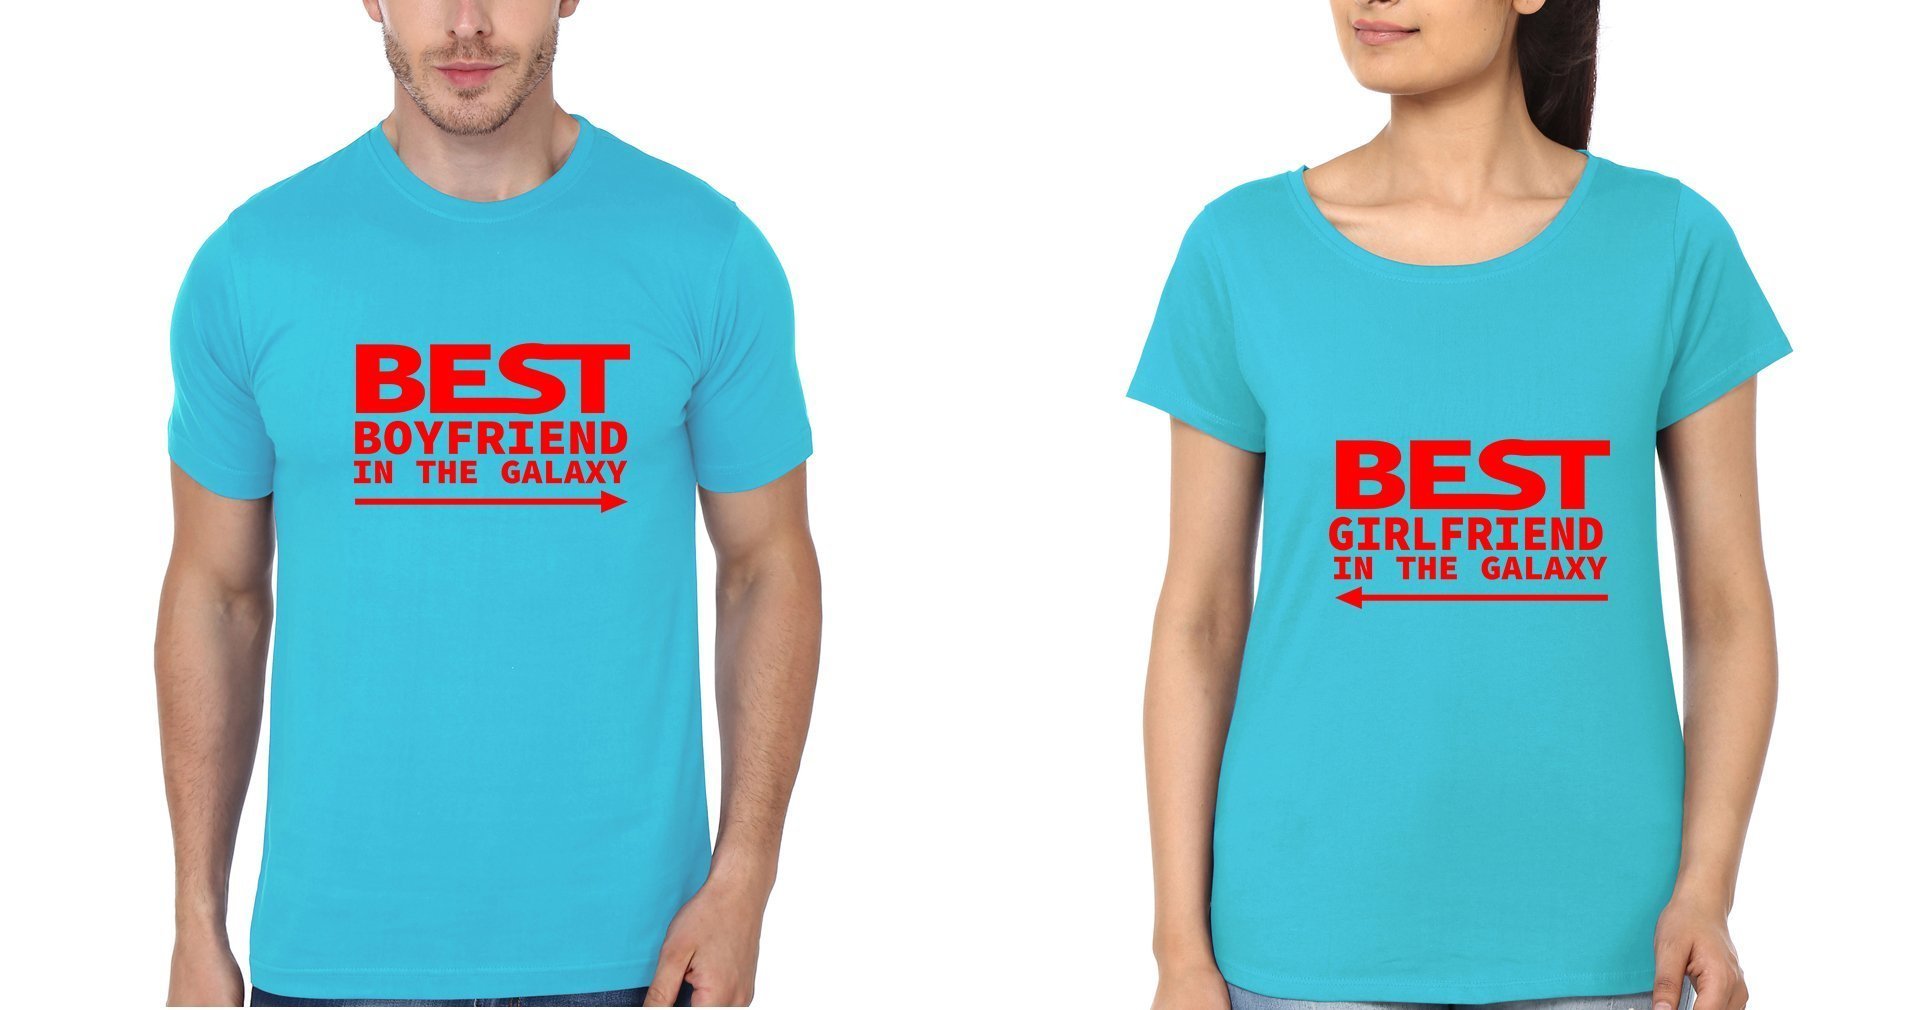 Best Boyfriend GF Couple Half Sleeves T-Shirts -FunkyTees - Funky Tees Club